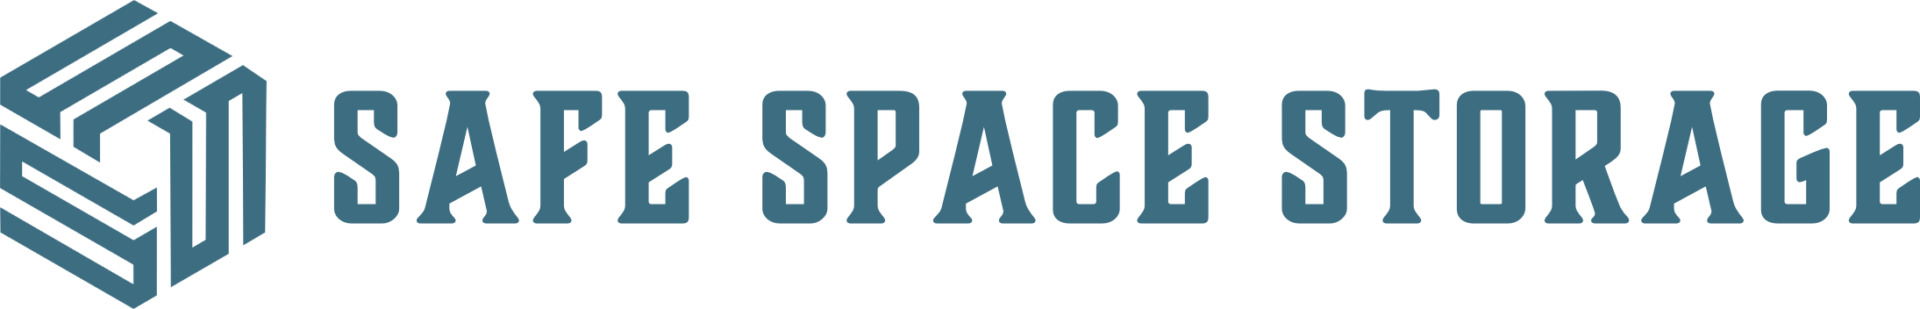 Safe Space Storage Waco logo